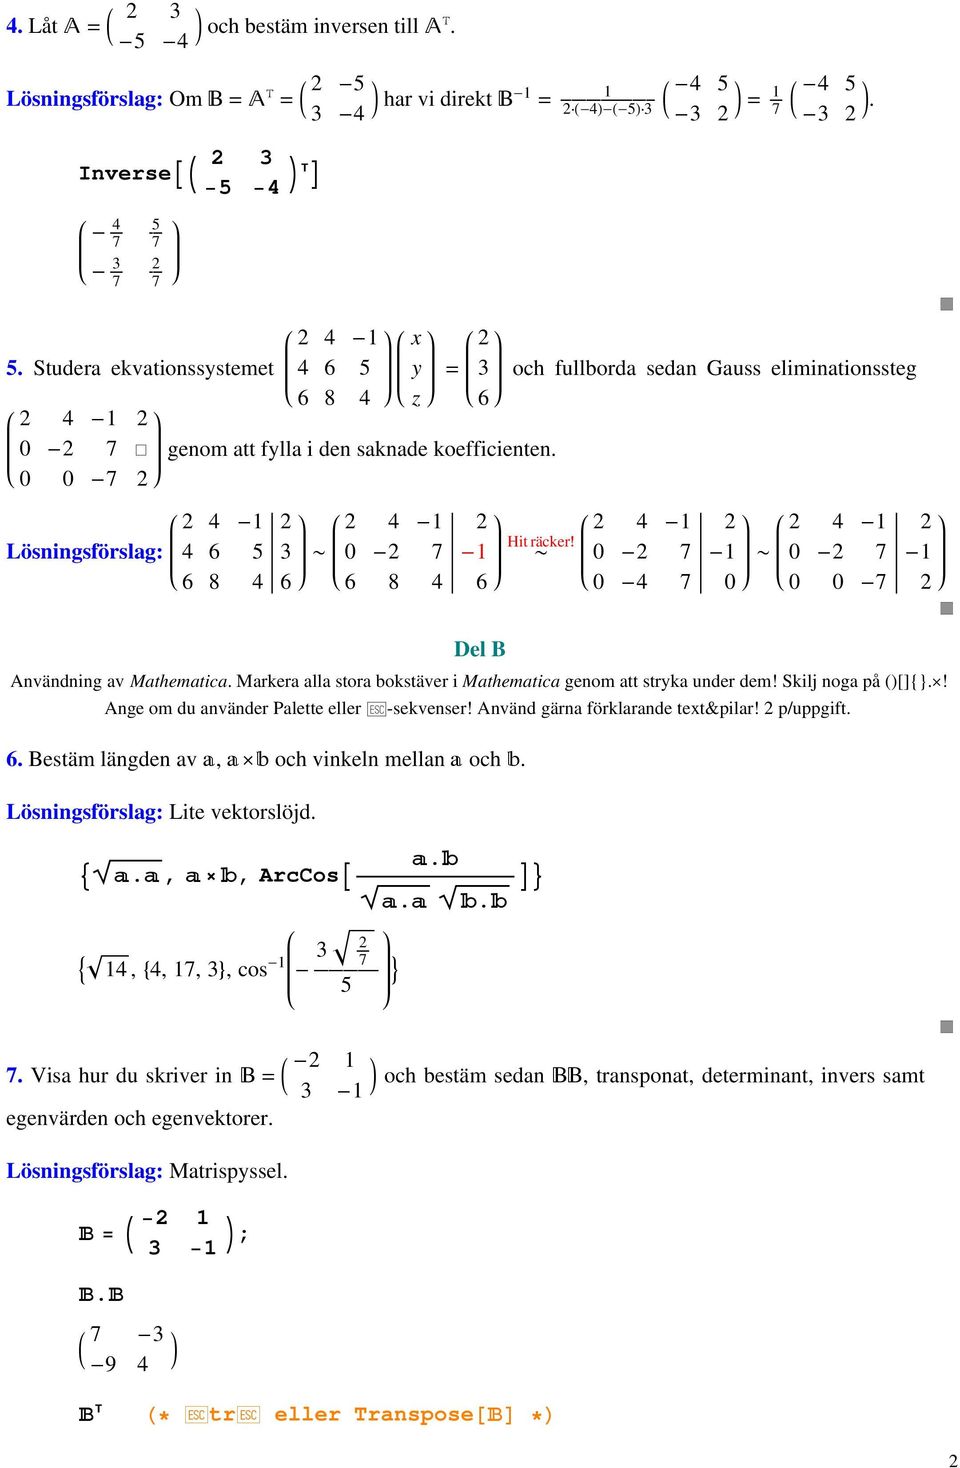 0 - - ~ 0 - - ~ 0 - - 6 8 6 6 8 6 0-0 0 0 - Del B Användning av Mathematica. Markera alla stora bokstäver i Mathematica genom att stryka under dem! Skilj noga på ()[]{}.ä! Ange om du använder Palette eller Â-sekvenser!